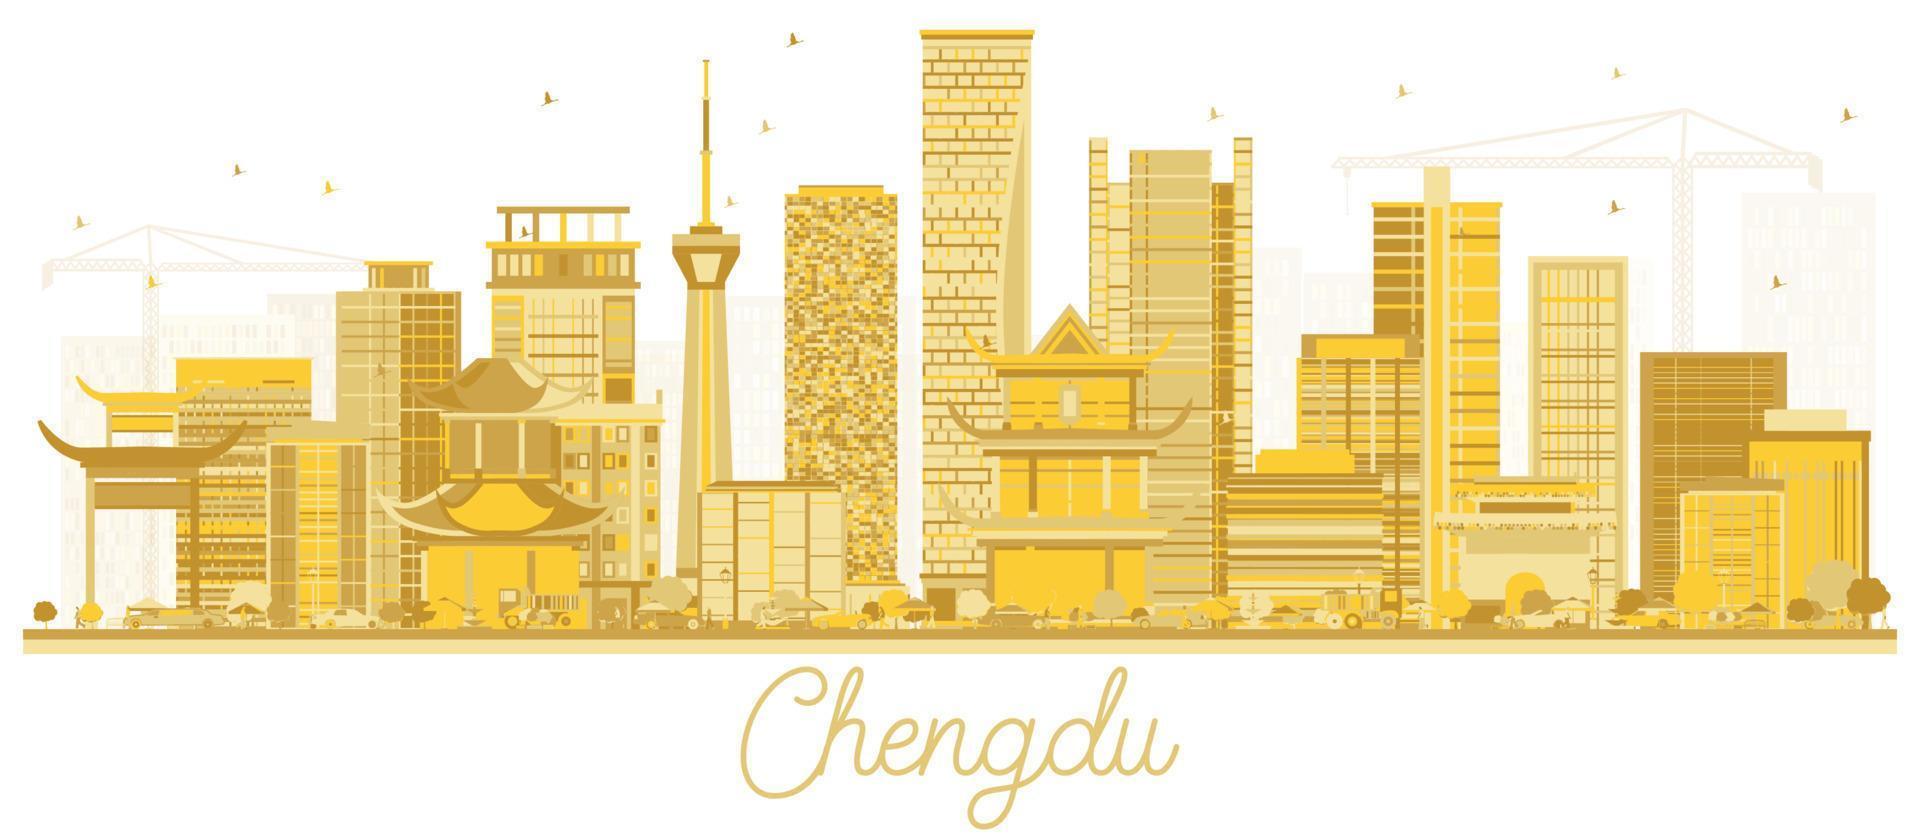 chengdu china city skyline silhouette mit goldenen gebäuden isoliert auf weiß. vektor